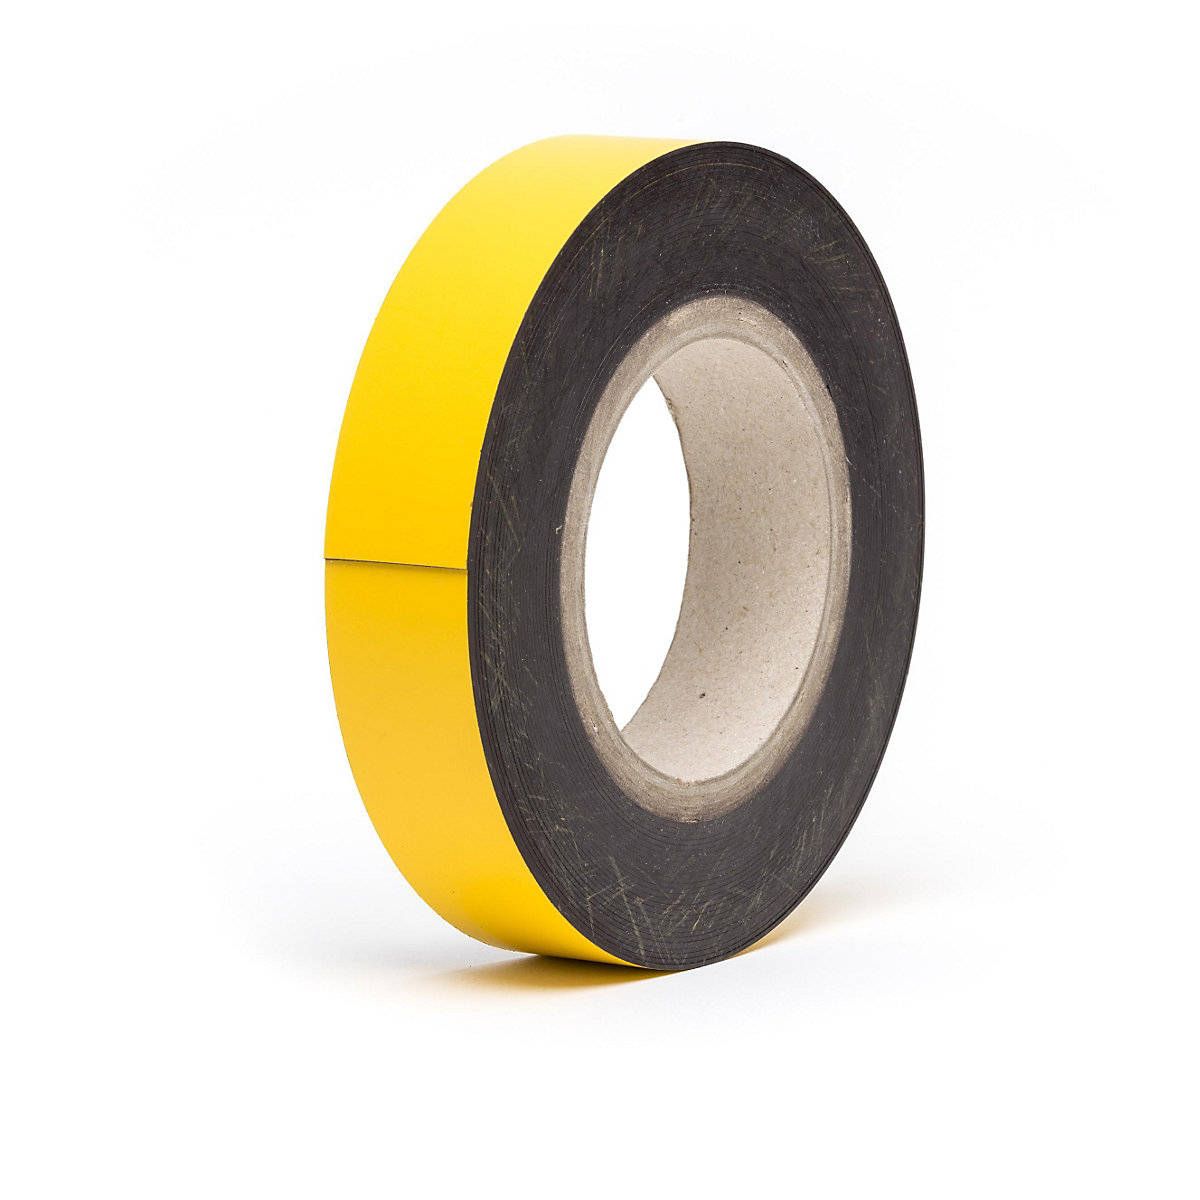 Magnetne skladišne pločice, u roli, u žutoj boji, visina 40 mm, dužina role 10 m-12